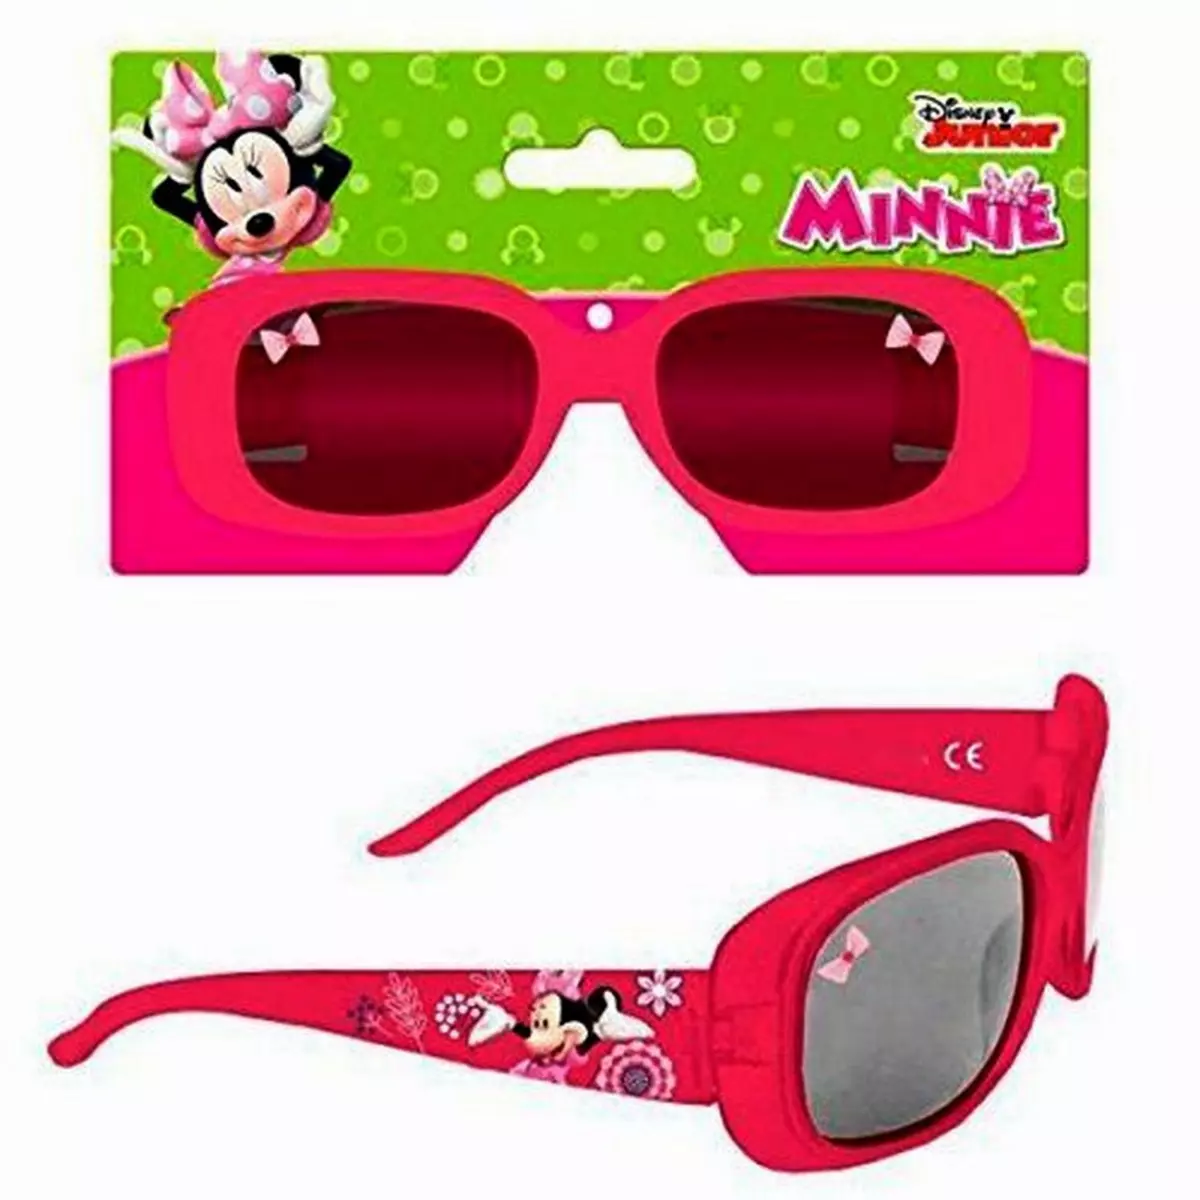 DISNEY Lunette de soleil Minnie Mouse Disney enfant ete